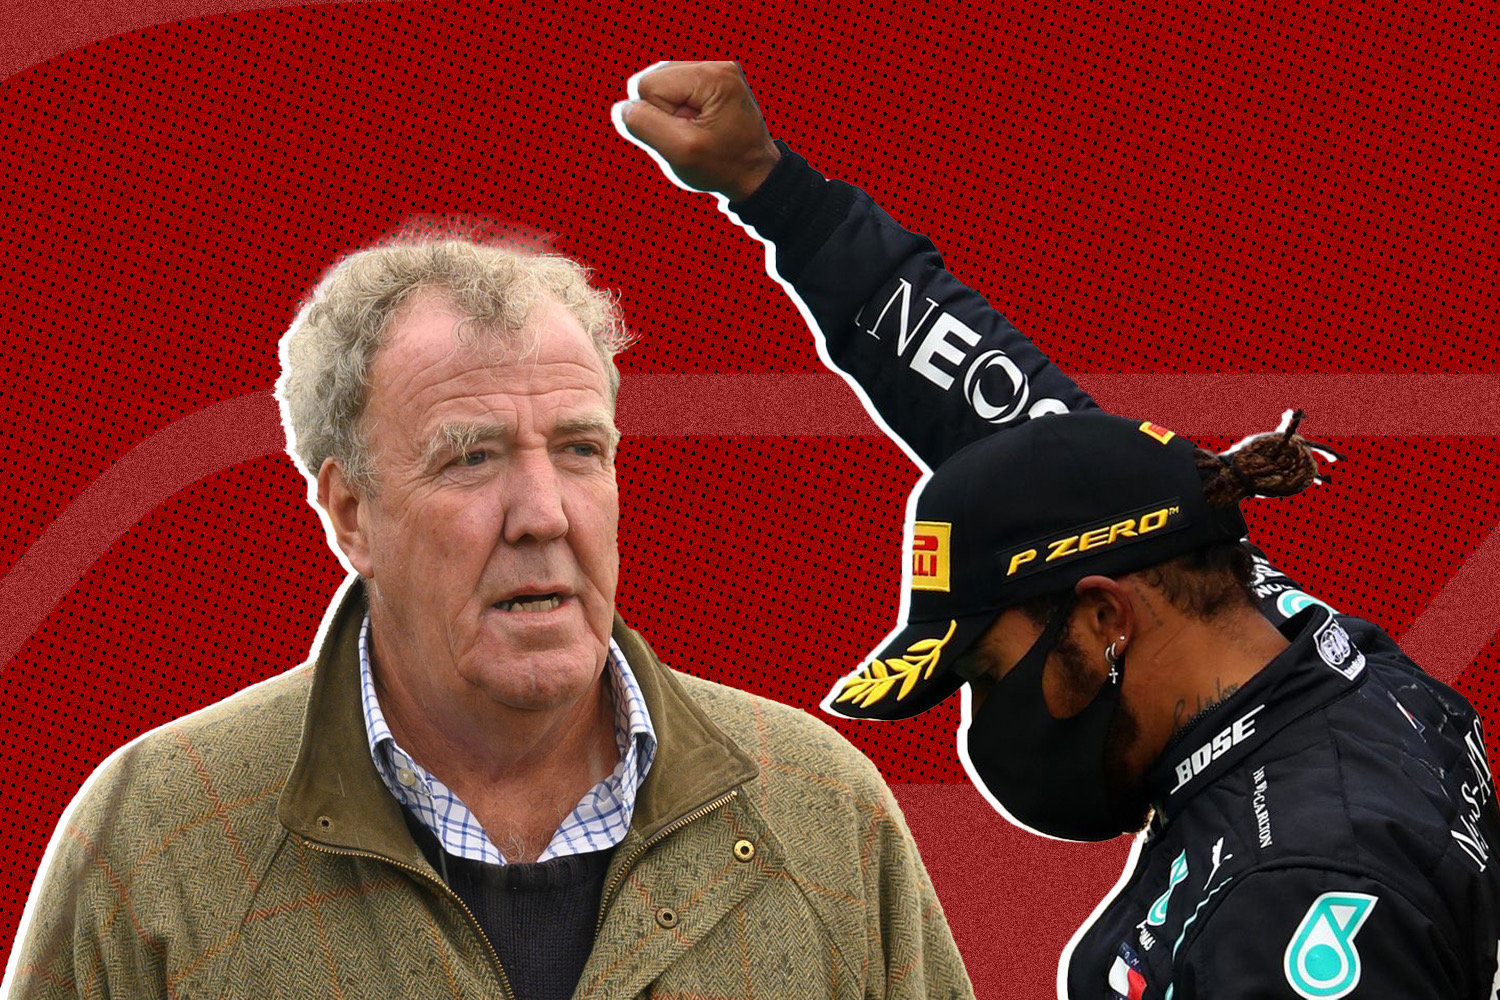 Jeremy Clarkson Takes Aim At Lewis Hamilton With ‘Anti-Woke’ Rant